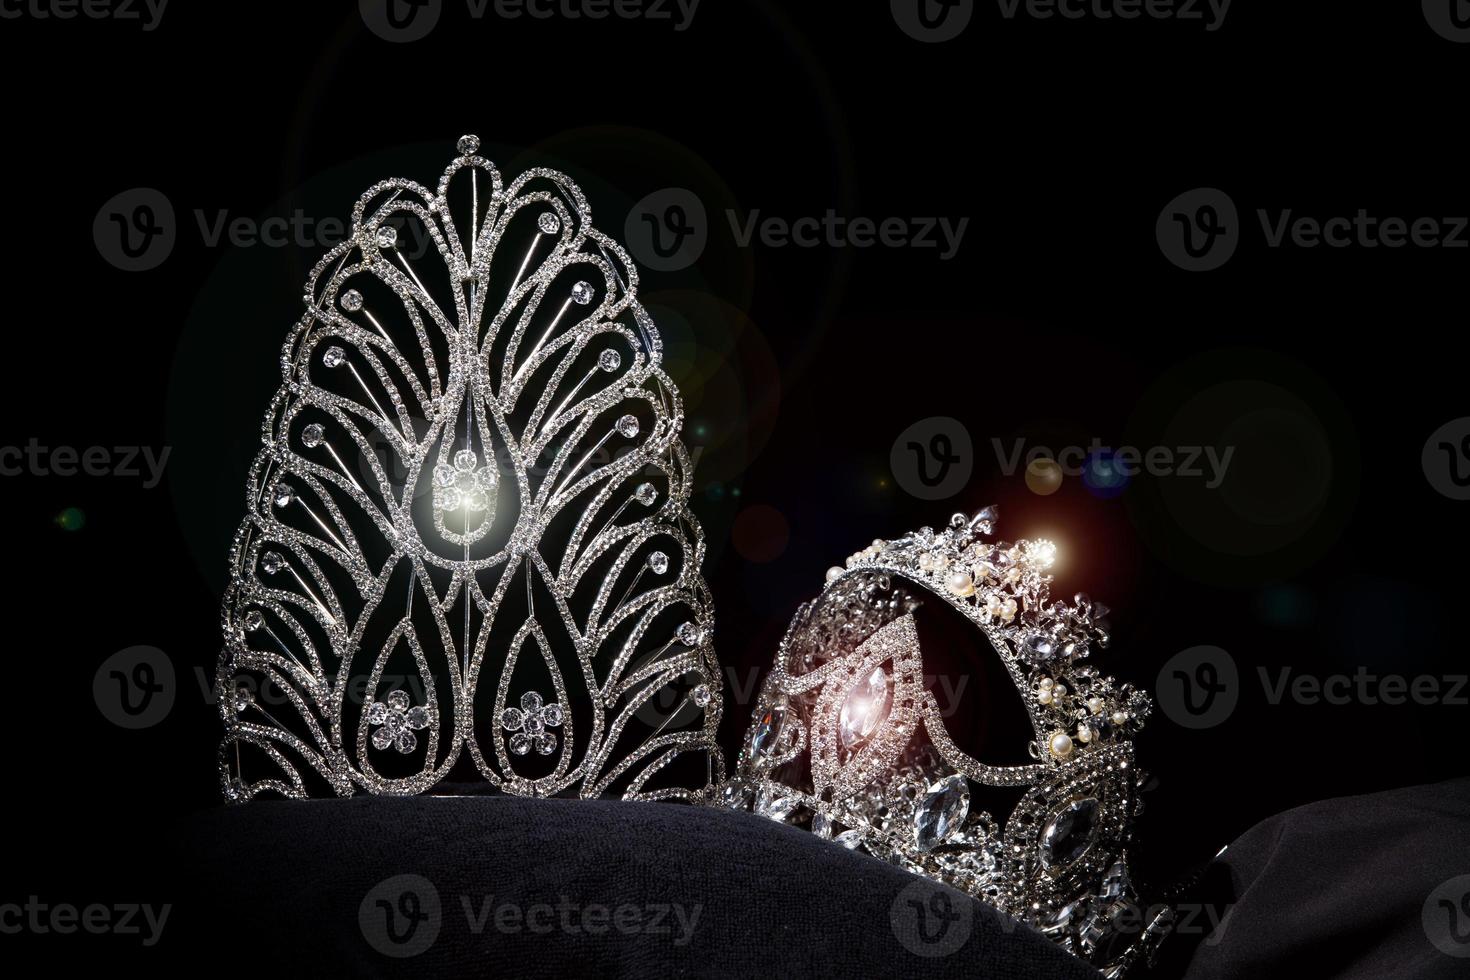 couronne en argent diamant pour le concours de beauté miss pageant, bijoux en diadème en cristal décorés de pierres précieuses et fond sombre abstrait sur tissu en velours noir, espace de copie de macro photographie pour le logo texte photo